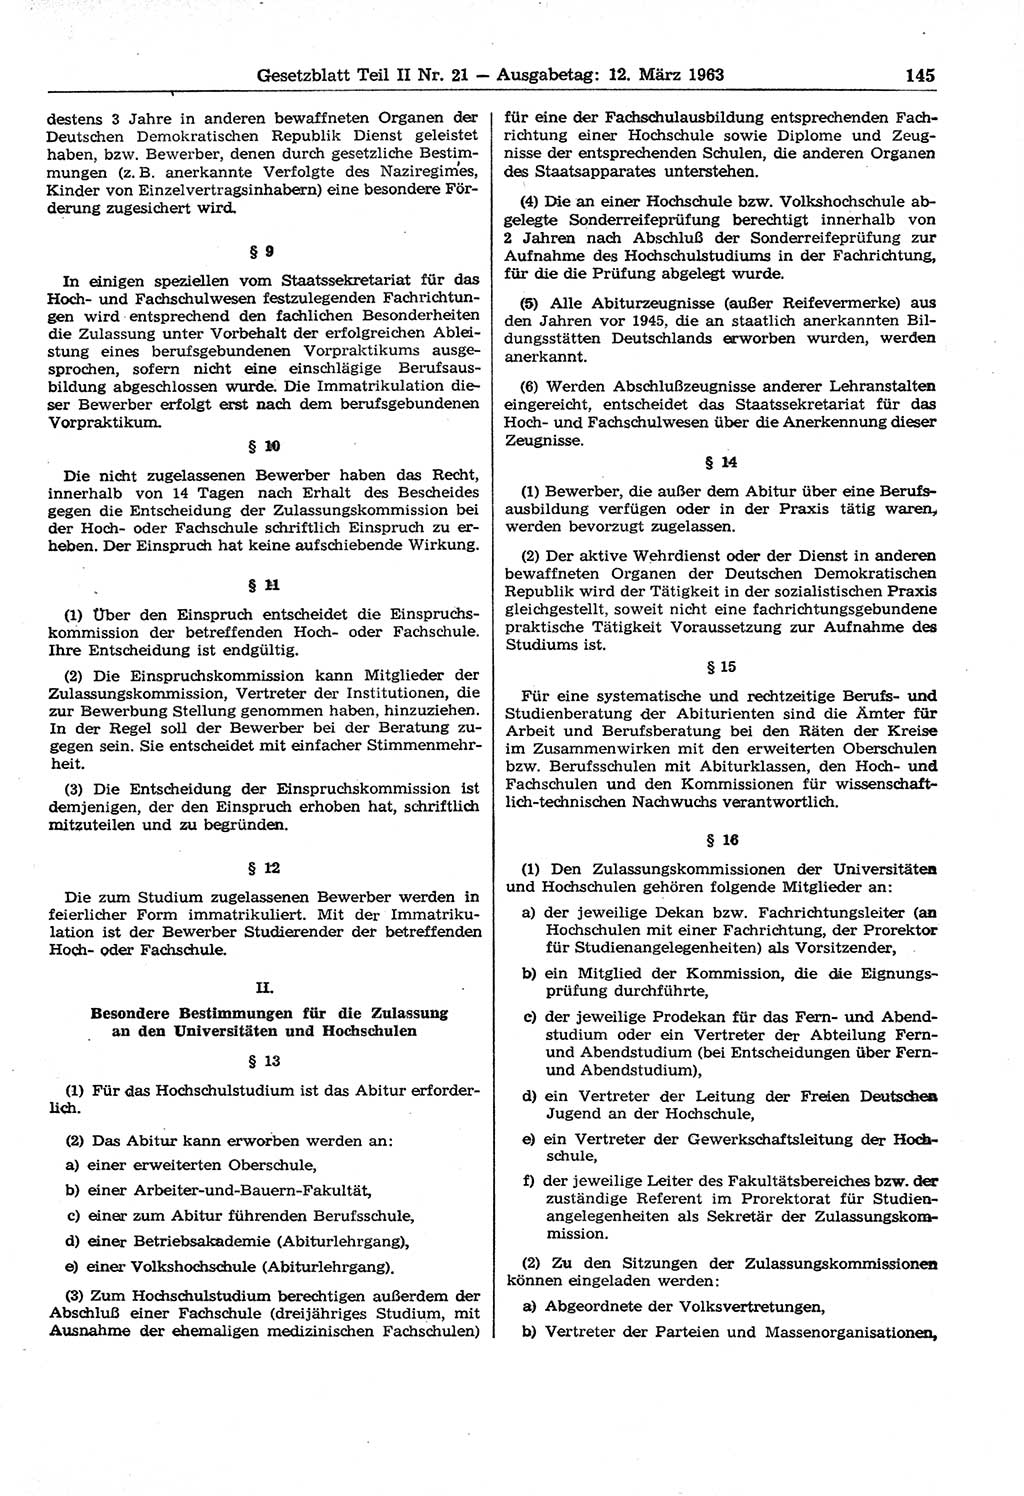 Gesetzblatt (GBl.) der Deutschen Demokratischen Republik (DDR) Teil ⅠⅠ 1963, Seite 145 (GBl. DDR ⅠⅠ 1963, S. 145)